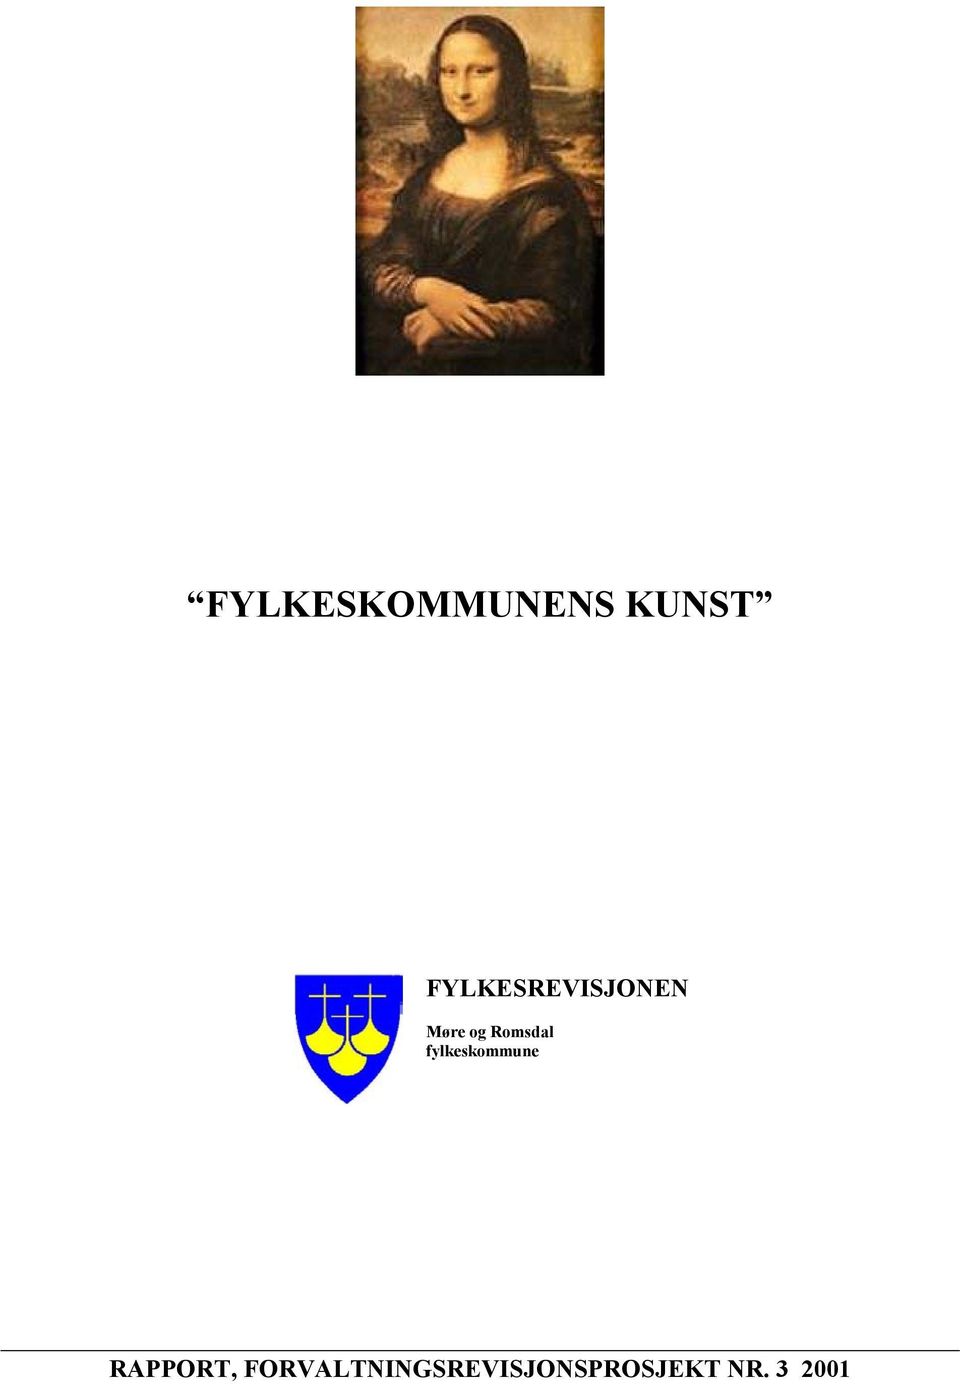 Romsdal fylkeskommune